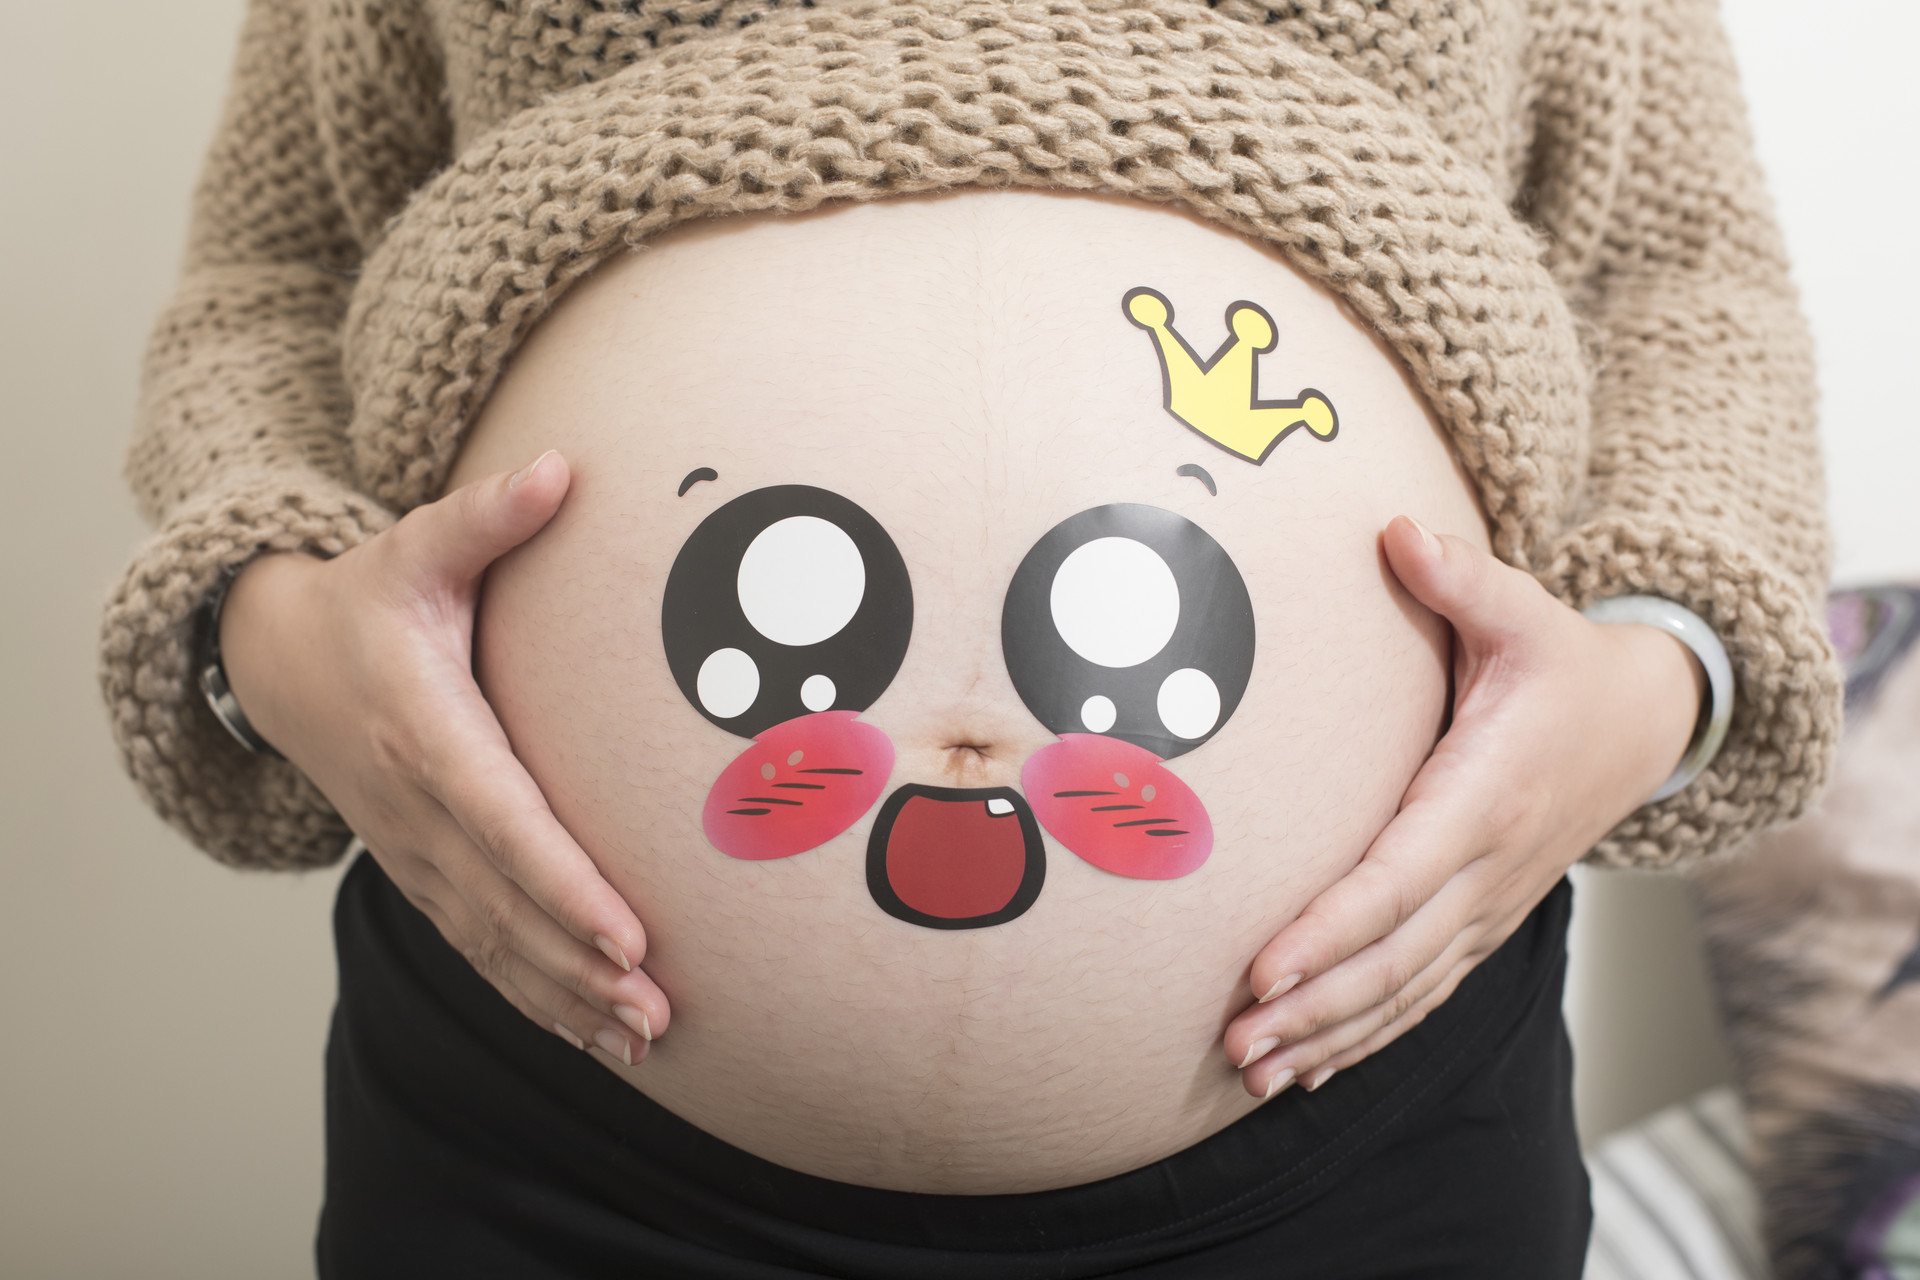 狼疮患者妊娠期使用羟氯喹安全性和疗效如何？